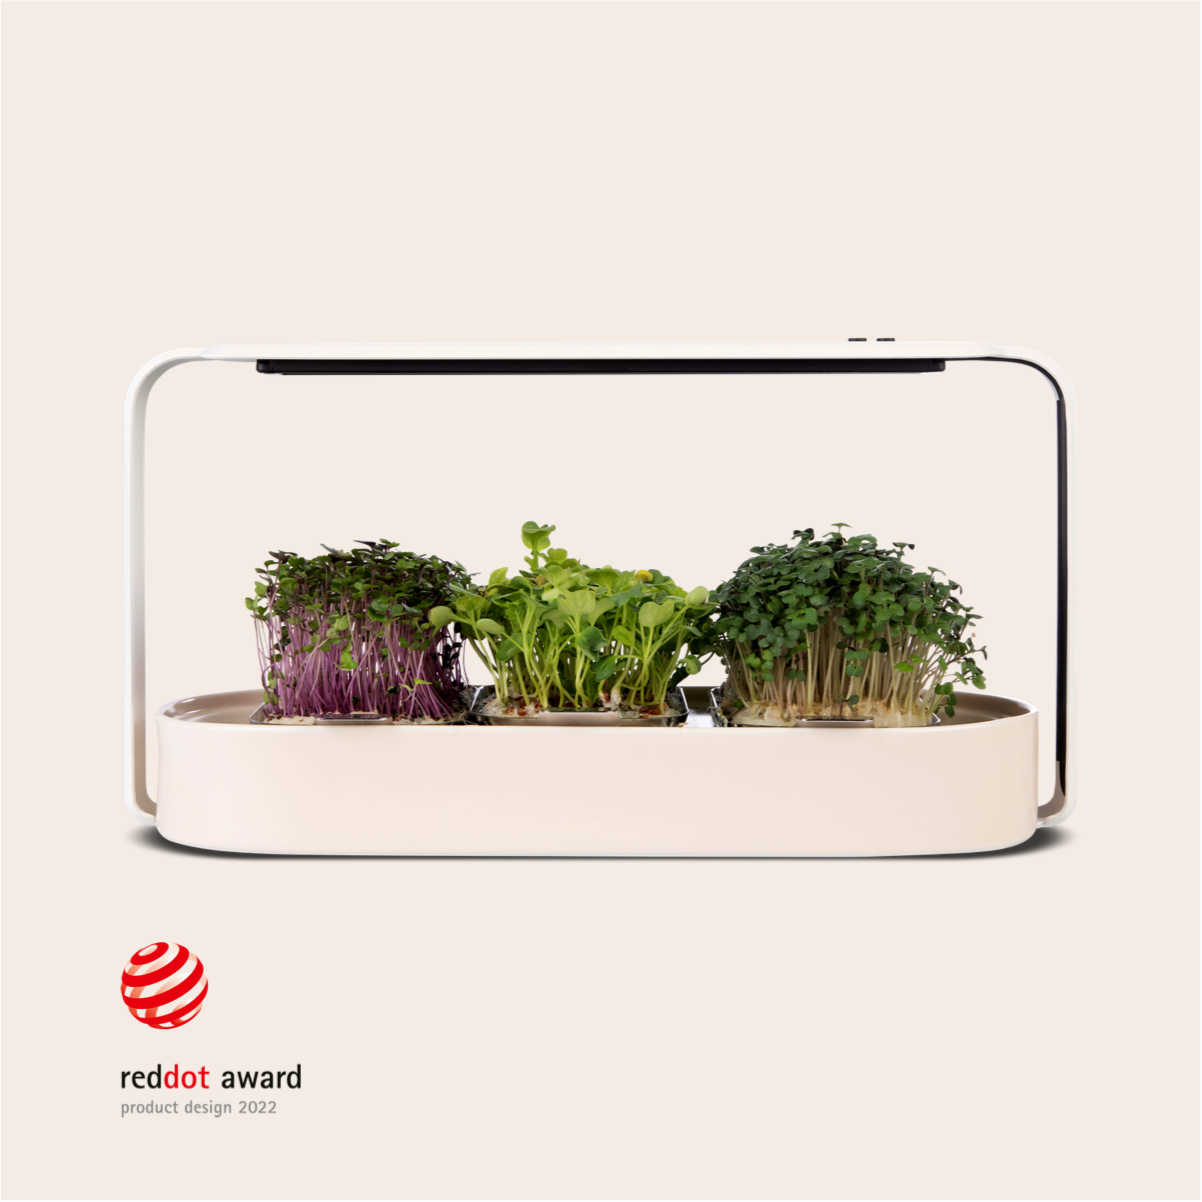 ingarden (bundle offer) Microgreens Growing Kit ingarden   